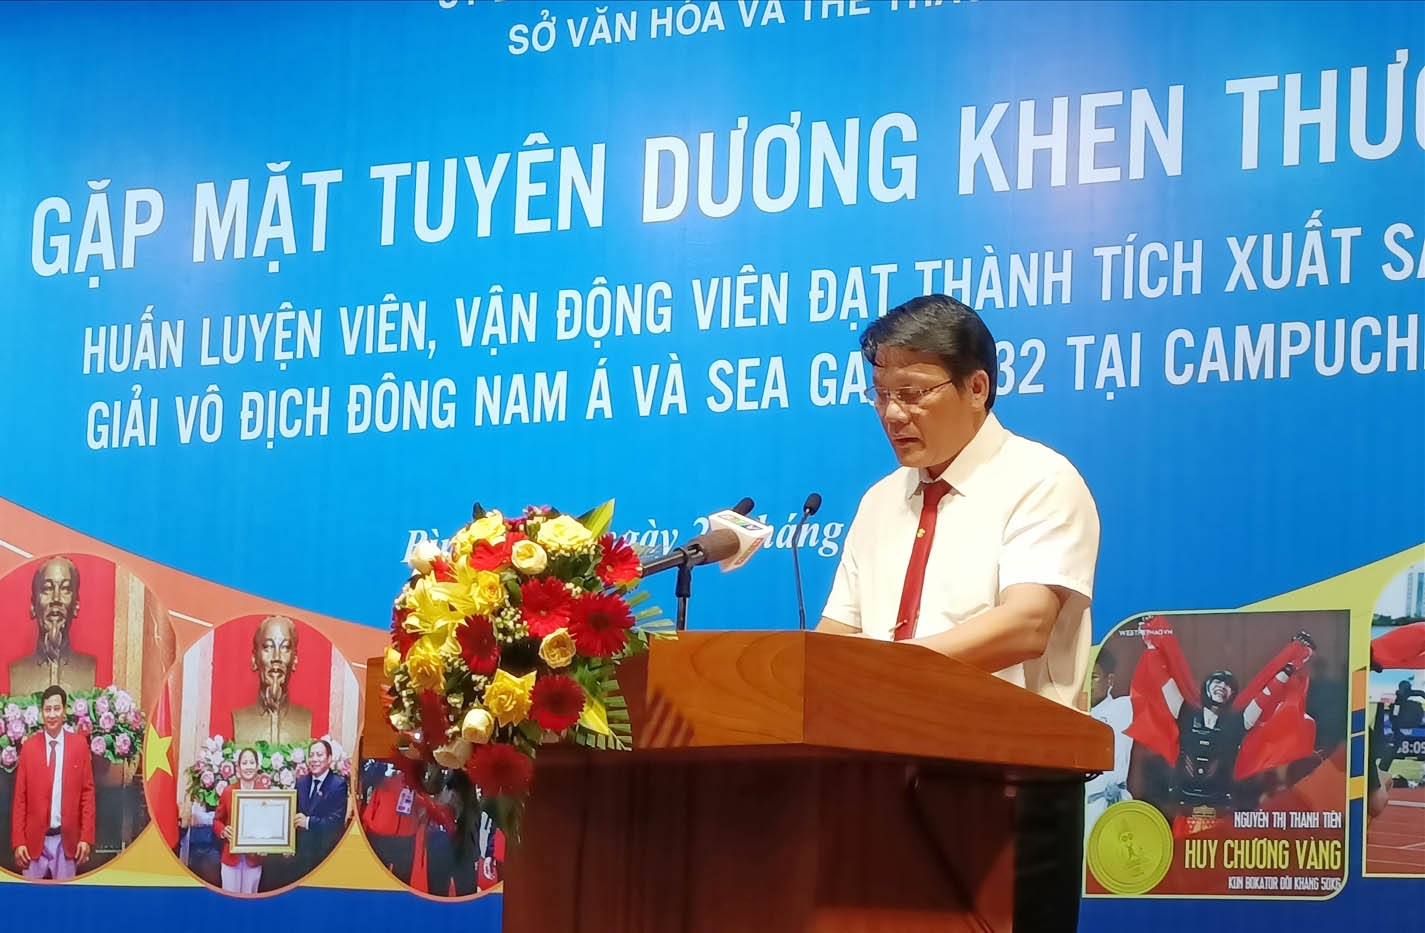 Ông Bùi Trung Hiếu - Phó Giám đốc Sở Văn hóa Thể thao Bình Định báo cáo thành tích của Đoàn Thể thao Bình Định